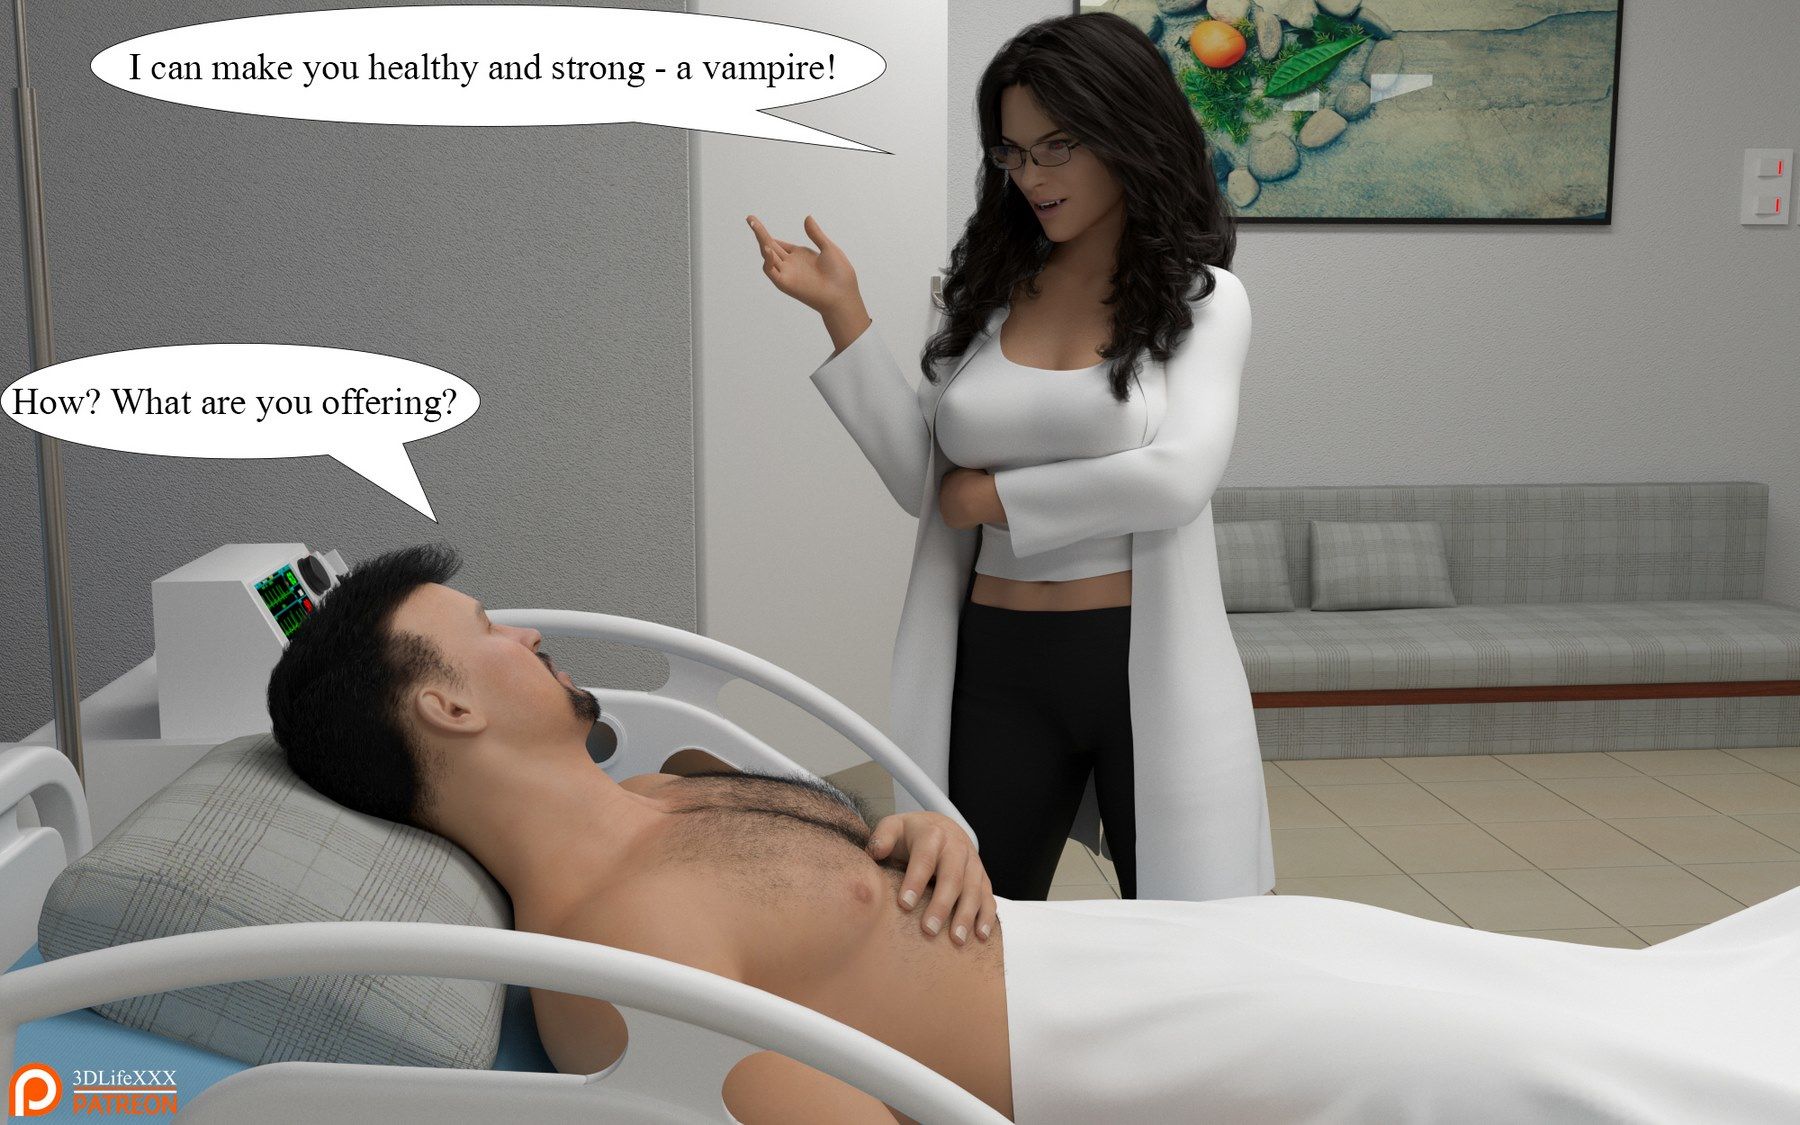 Vampire Episode 1 3DLifeXXX page 13